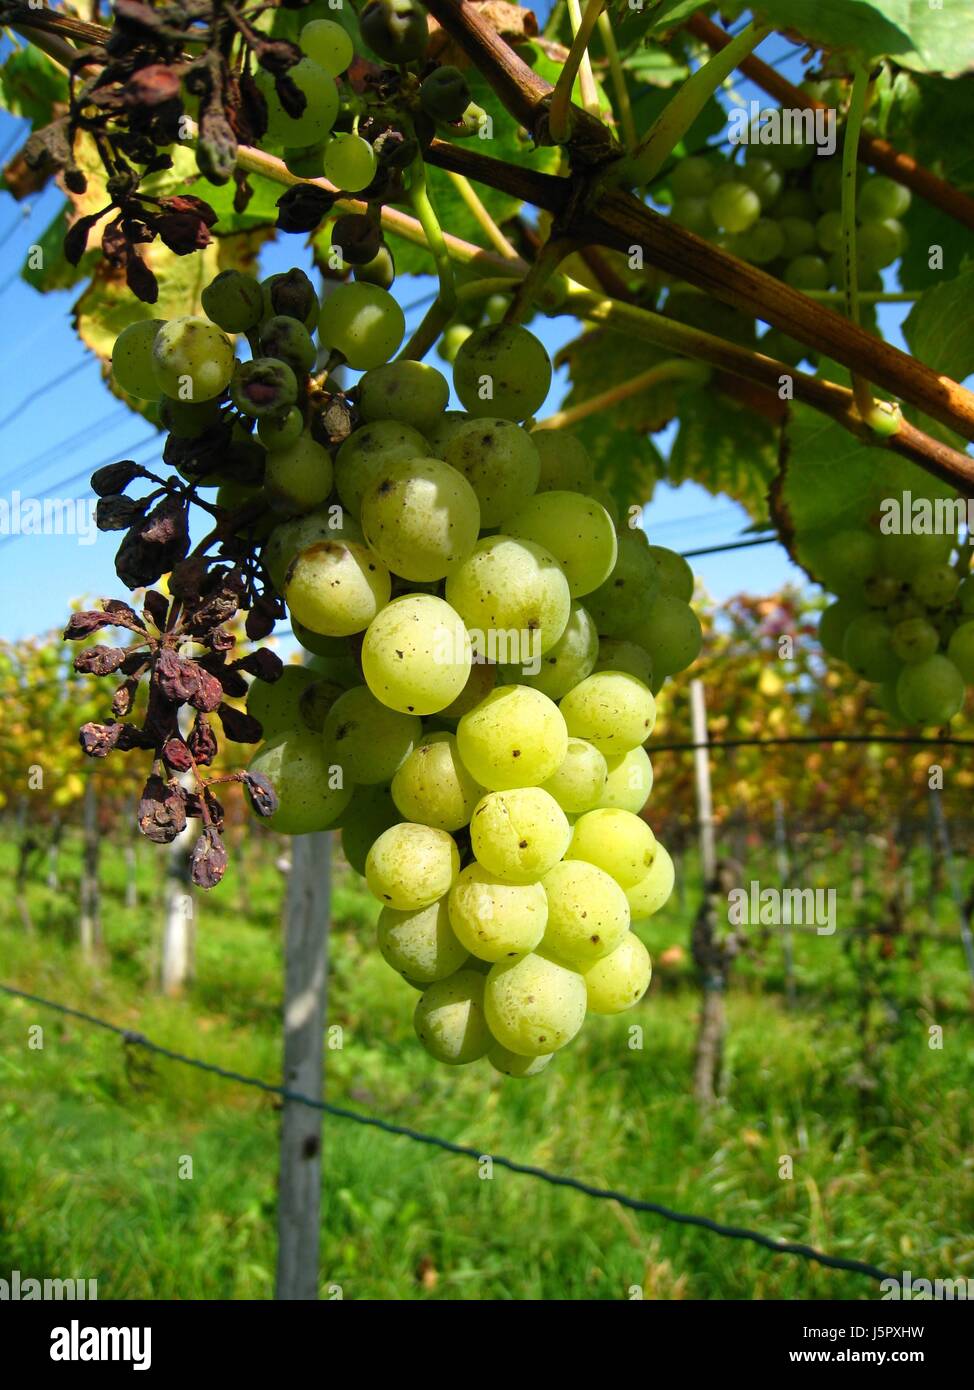 Shine brilla luminosa luce della Lucent Technologies sereno luminoso svizzera di sole uve mature Foto Stock